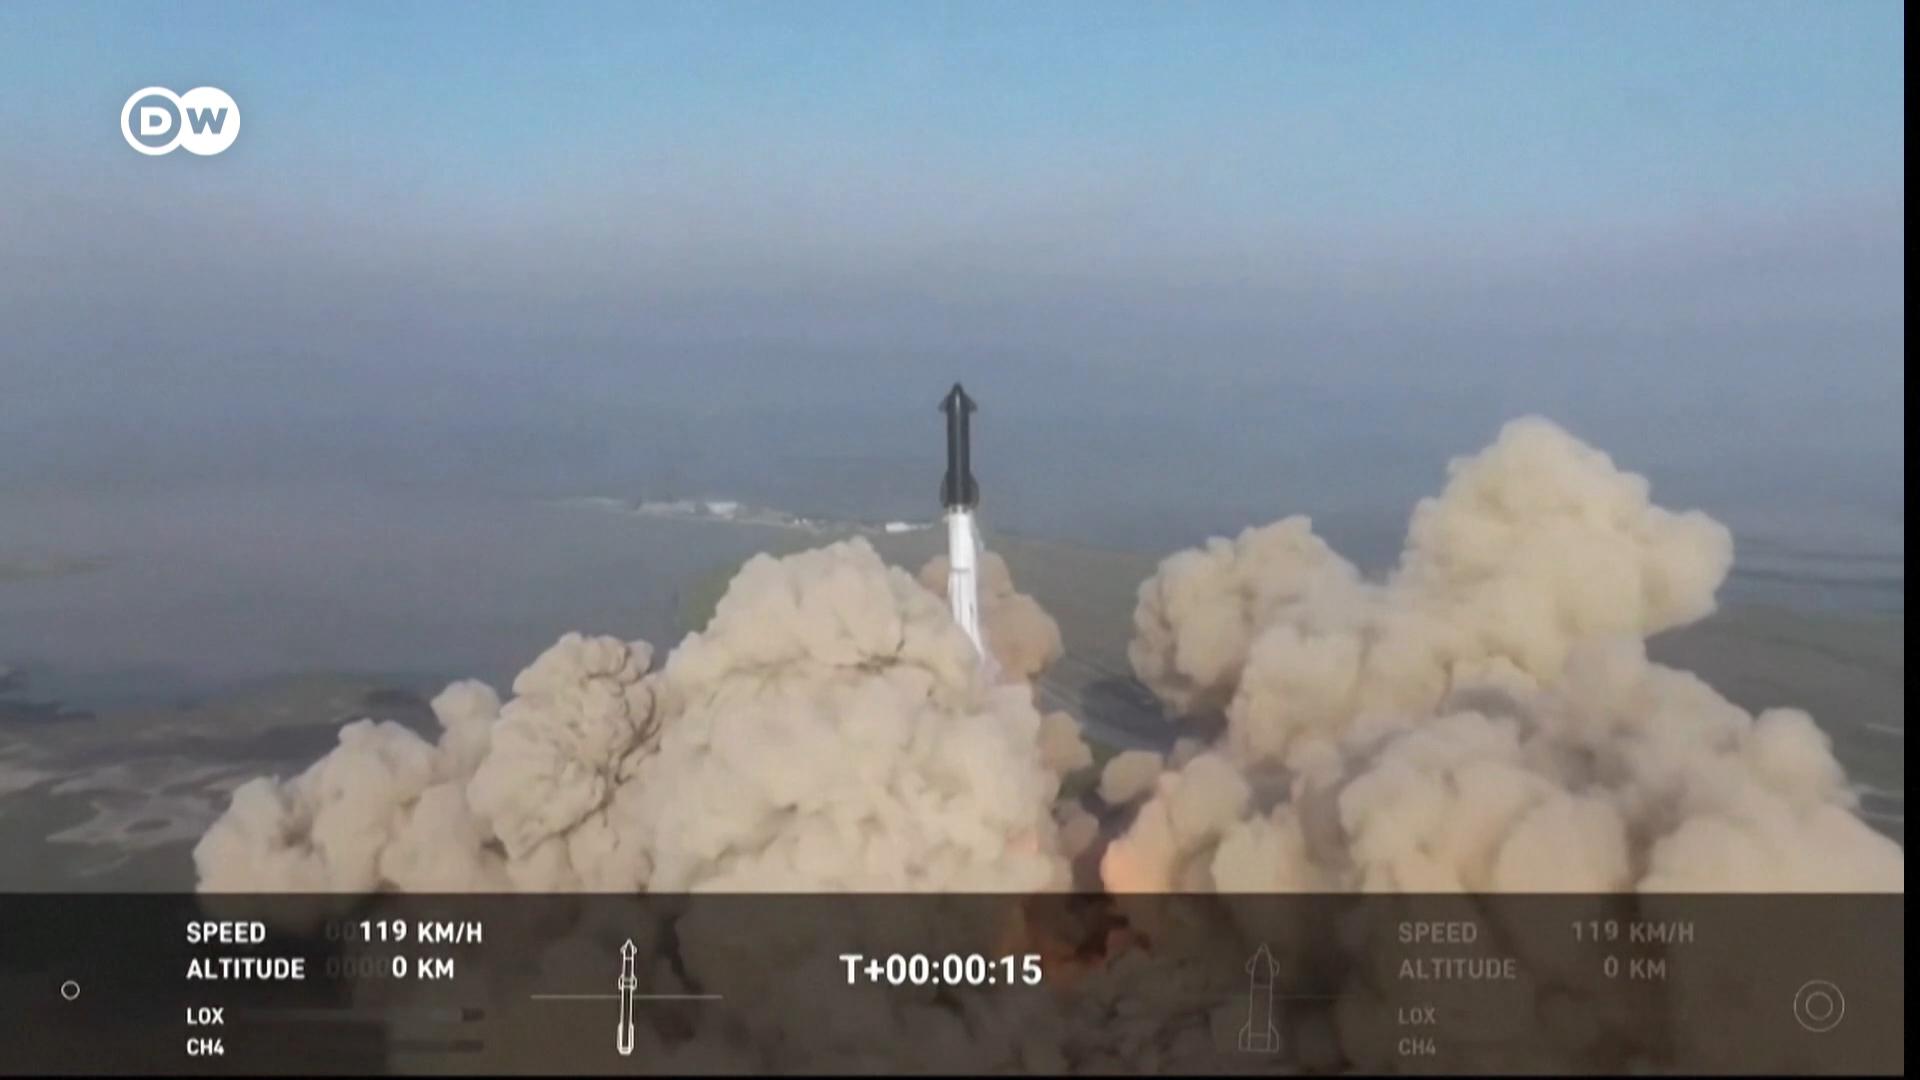 亿万富豪马斯克的SpaceX公司周四成功让“星舰”升空，但火箭发射不到四分钟便在高空爆炸。尽管如此，SpaceX仍乐观表示这是一次成功试射。马斯克也在推特上预告，数月后将卷土重来。